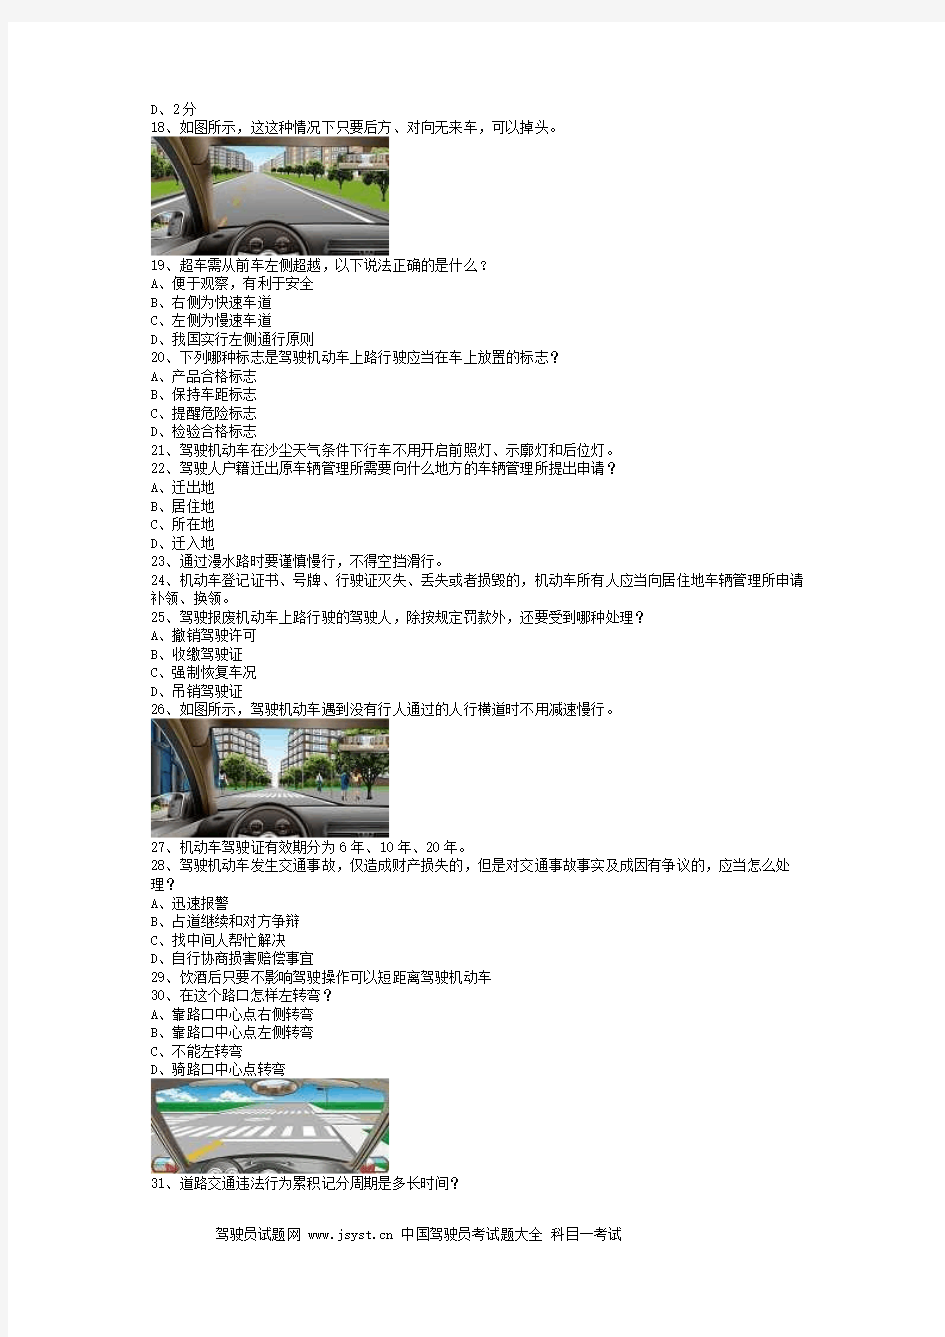 2009永成市驾照考试大客车精选试题